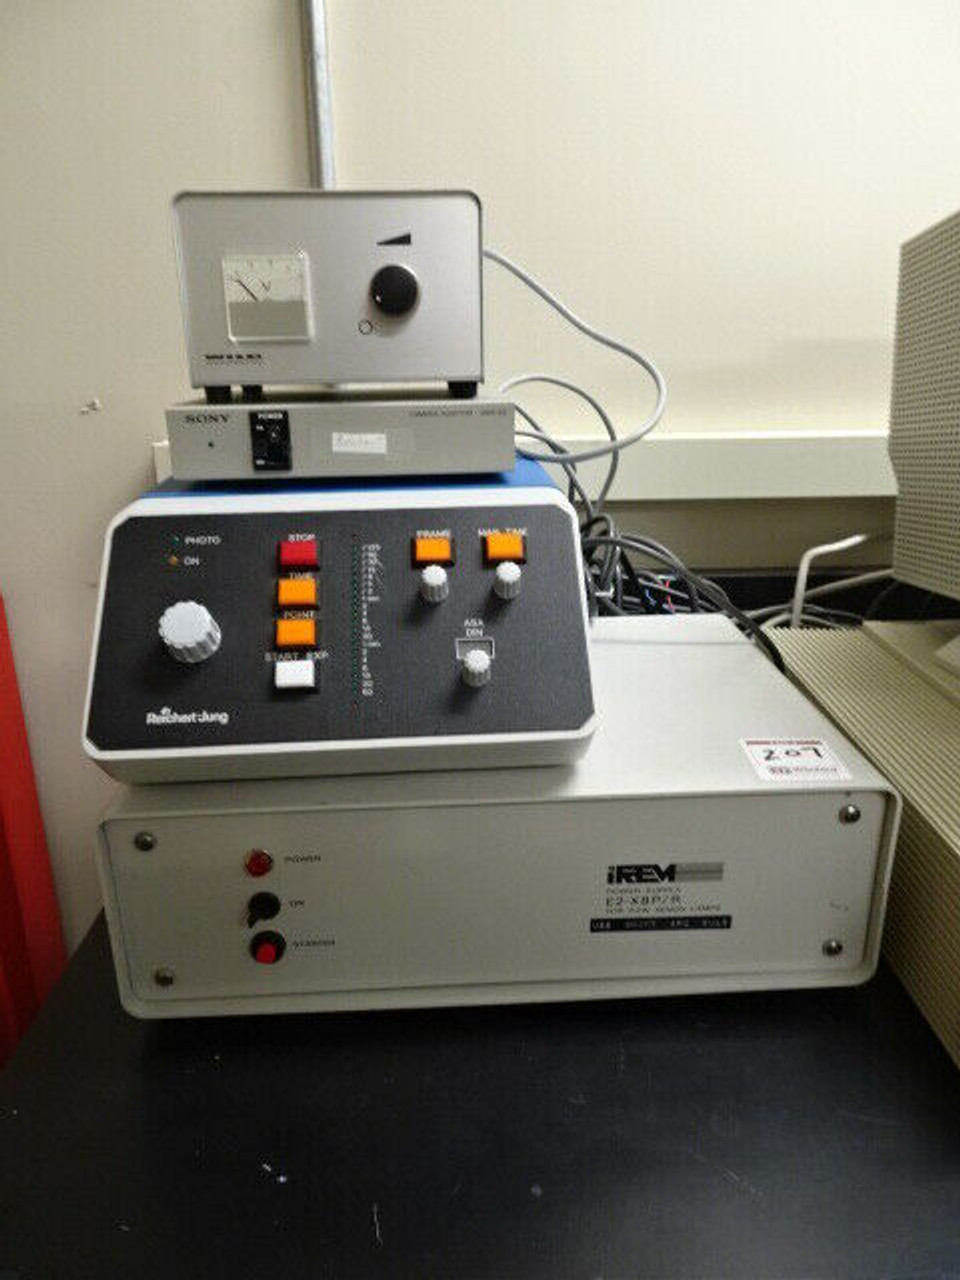 Reichert-Jung Polymar MET Microscope with Reichert Jung 6526-04 Controller